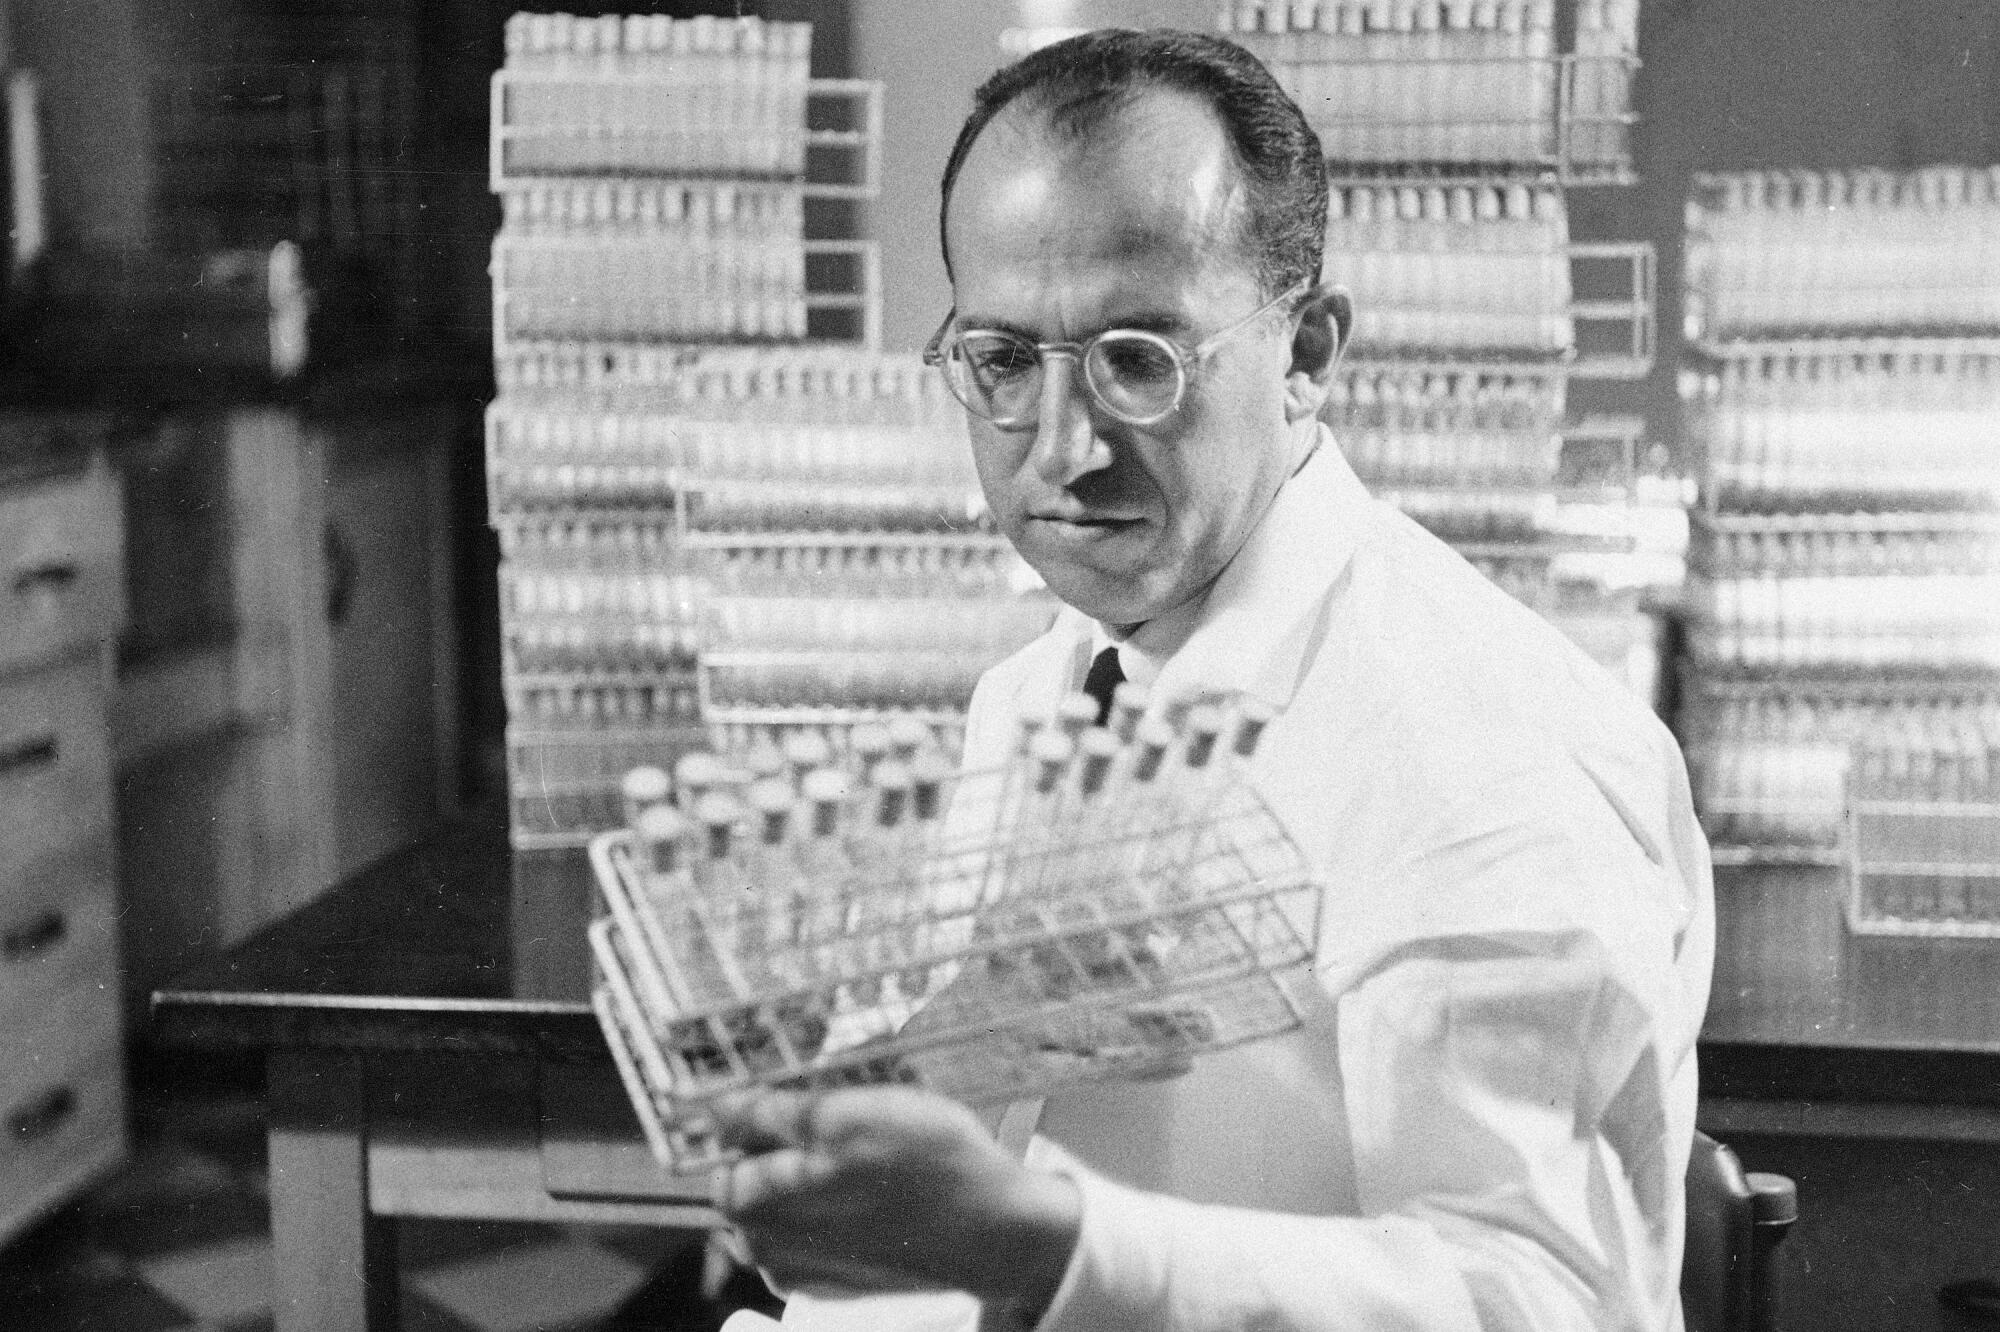  Jonas Salk, developer of the polio vaccine